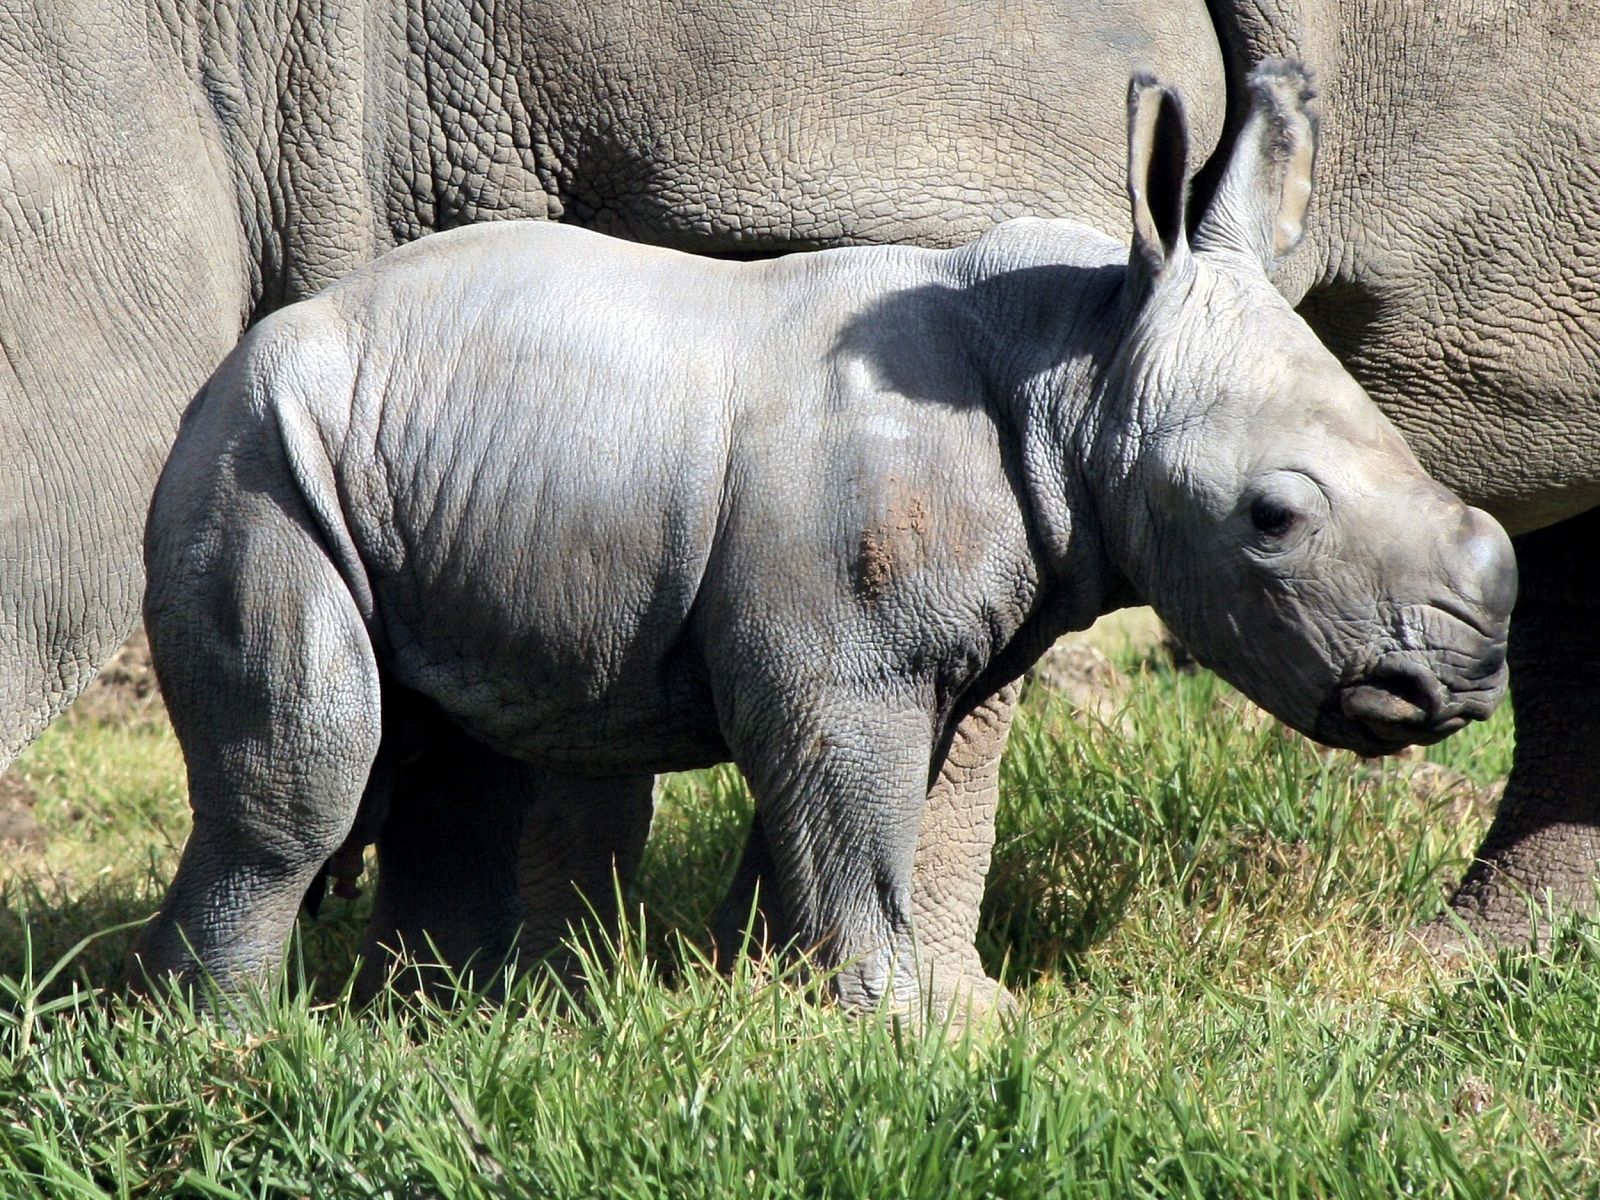 El rinoceronte blanco nacido hace una semana en el Zoológico Taronga Western Plains.